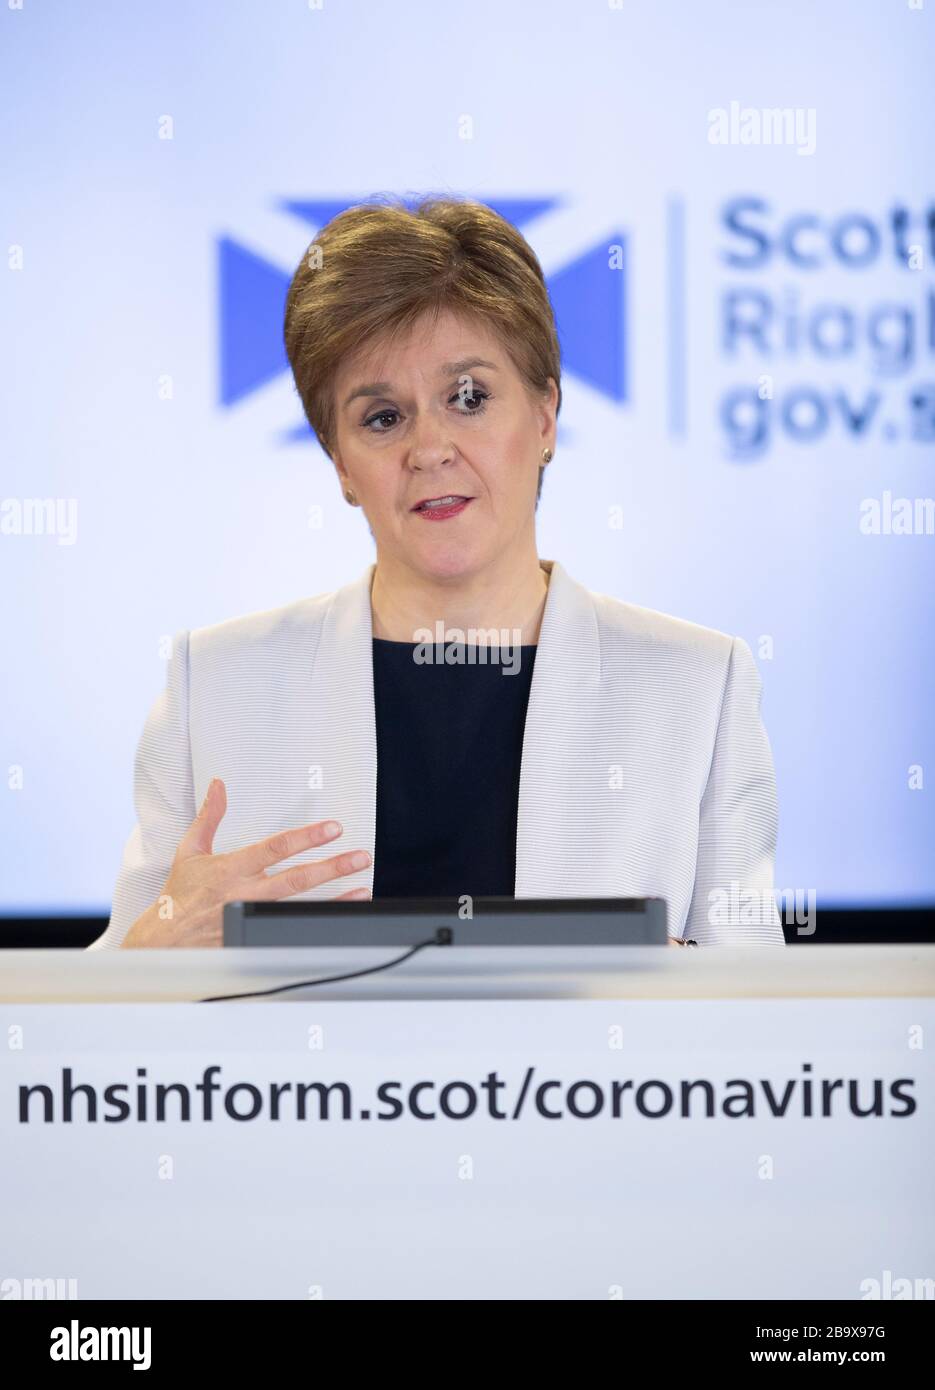 Schottlands erster Minister Nicola Sturgeon hält ein Briefing über den Ausbruch des Coronavirus (COVID-19) im St Andrew's House in Edinburgh ab, nachdem Premierminister Boris Johnson das Vereinigte Königreich in Sperrstellung versetzt hat, um die Ausbreitung des Coronavirus einzudämmen. Stockfoto